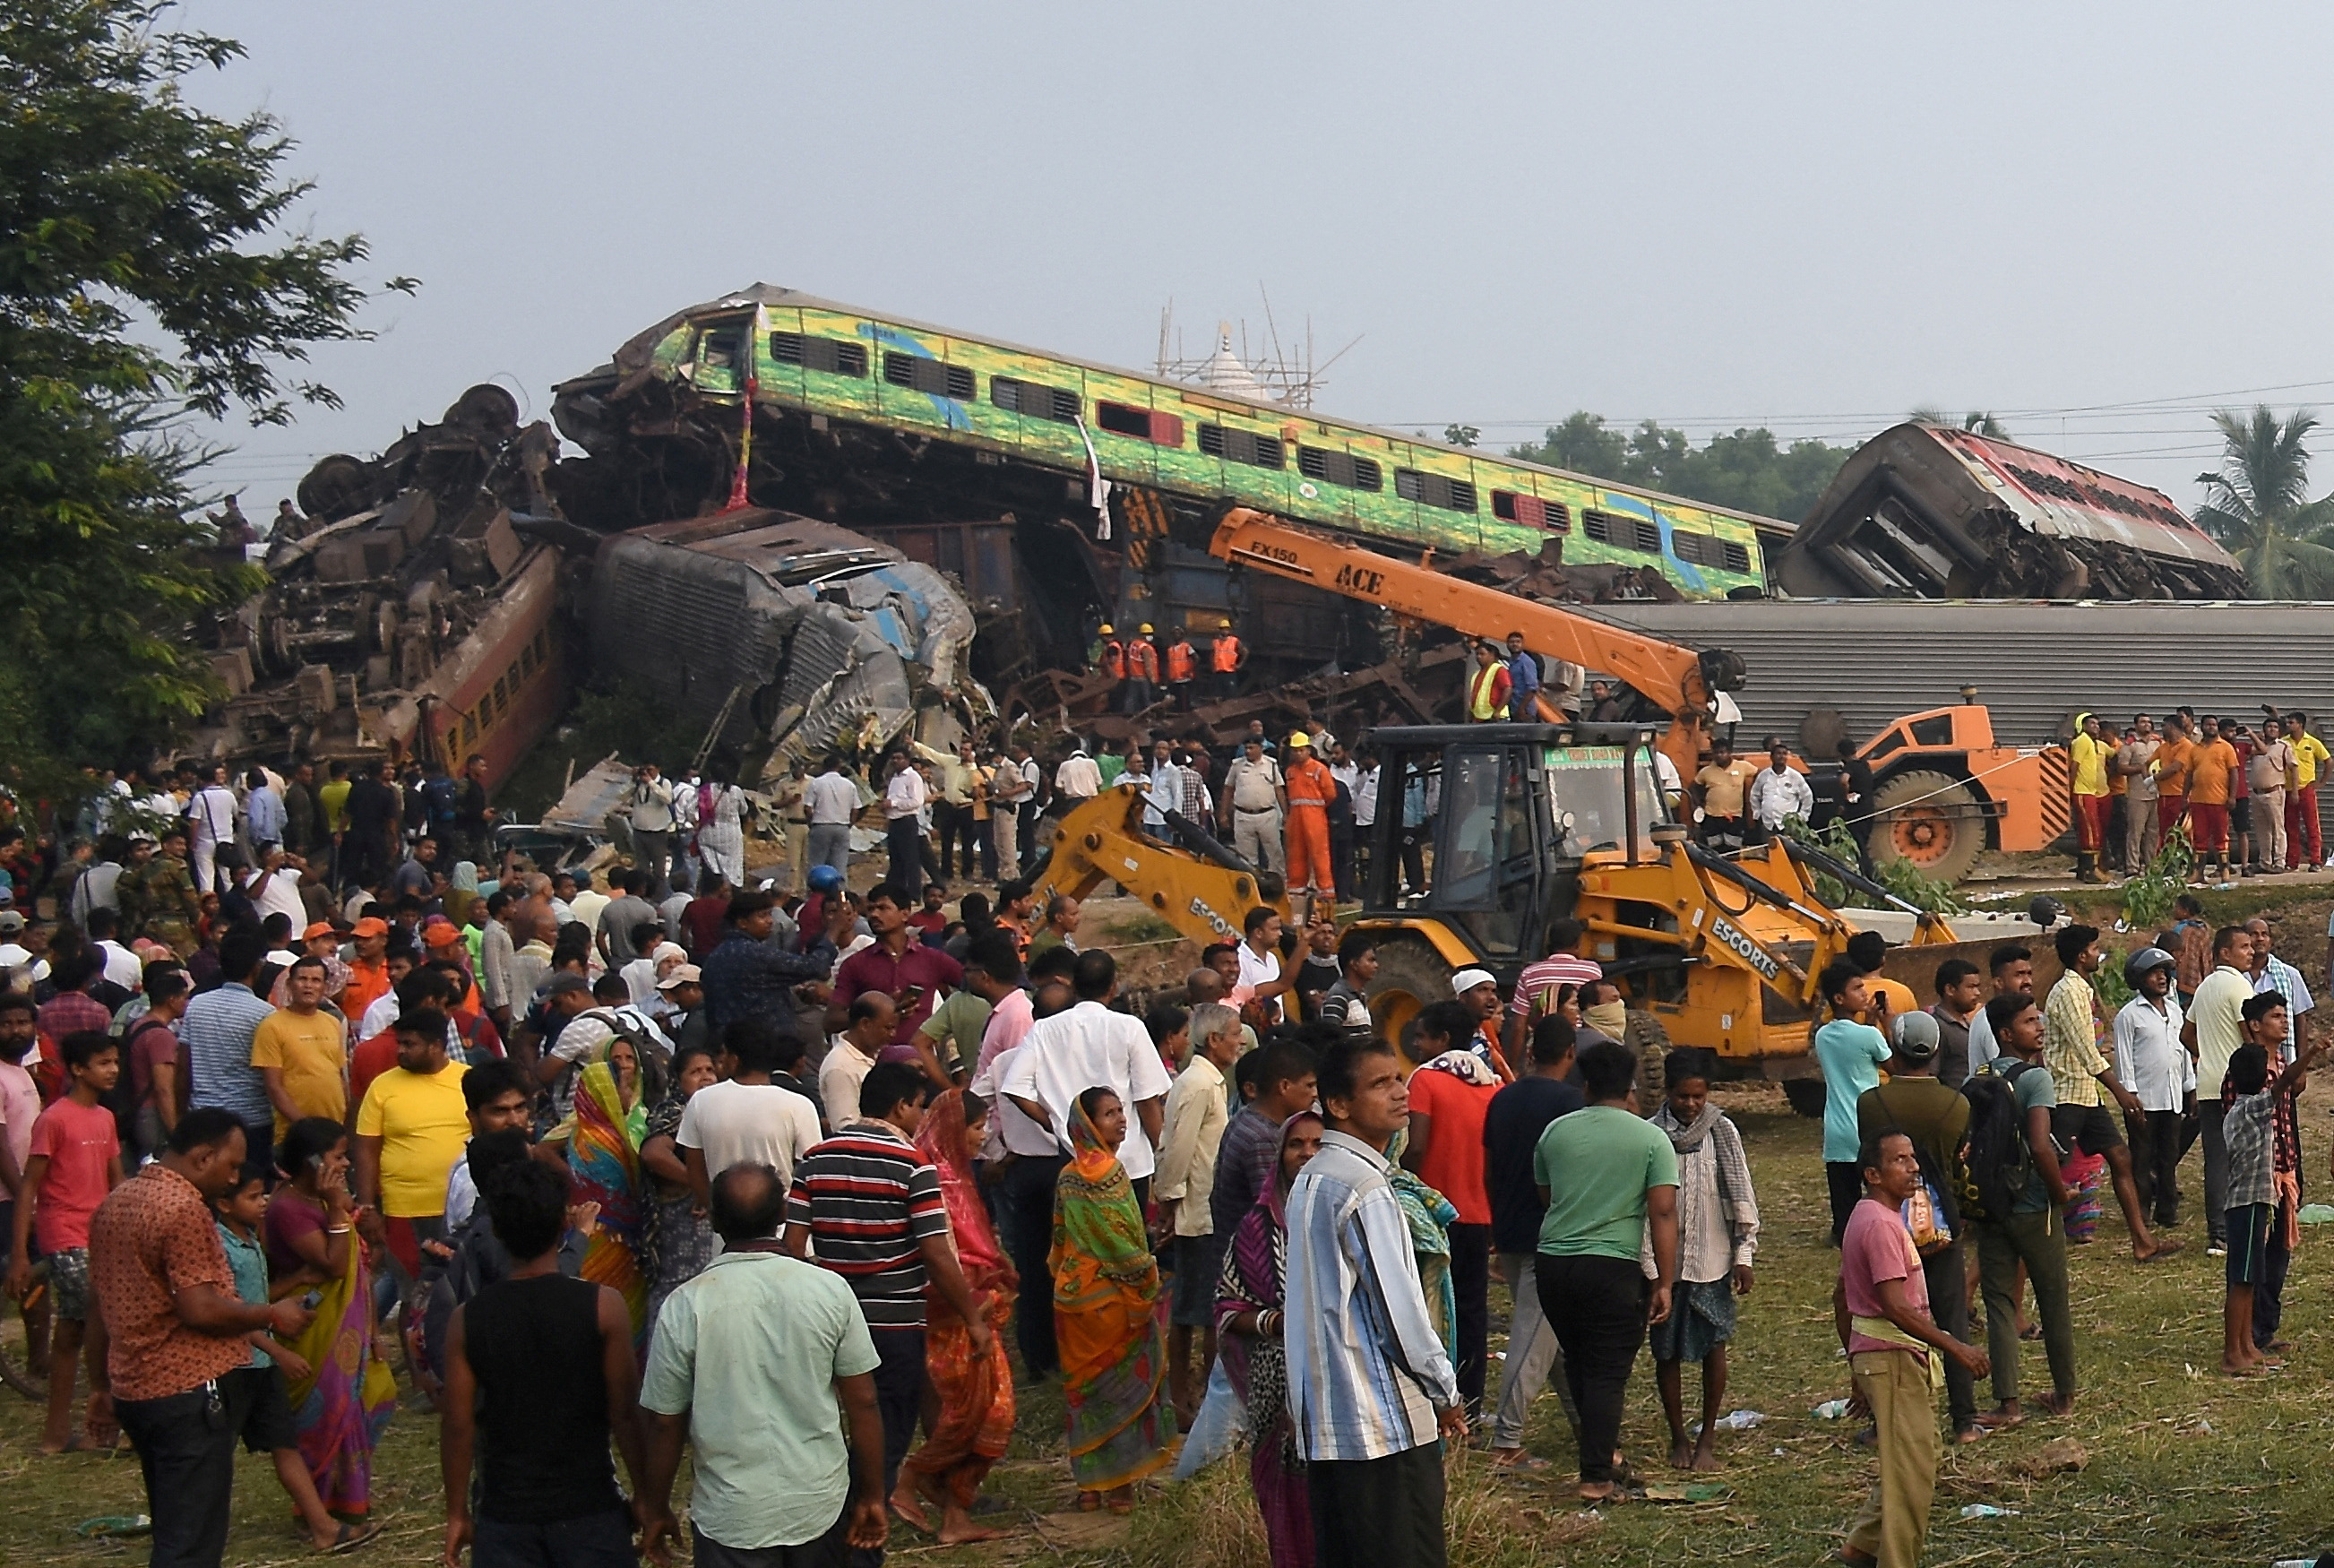 Σύγκρουση τρένων στην Ινδία: Τουλάχιστον 288 οι νεκροί, περίπου 850 οι τραυματίες - Πώς έγινε το δυστύχημα